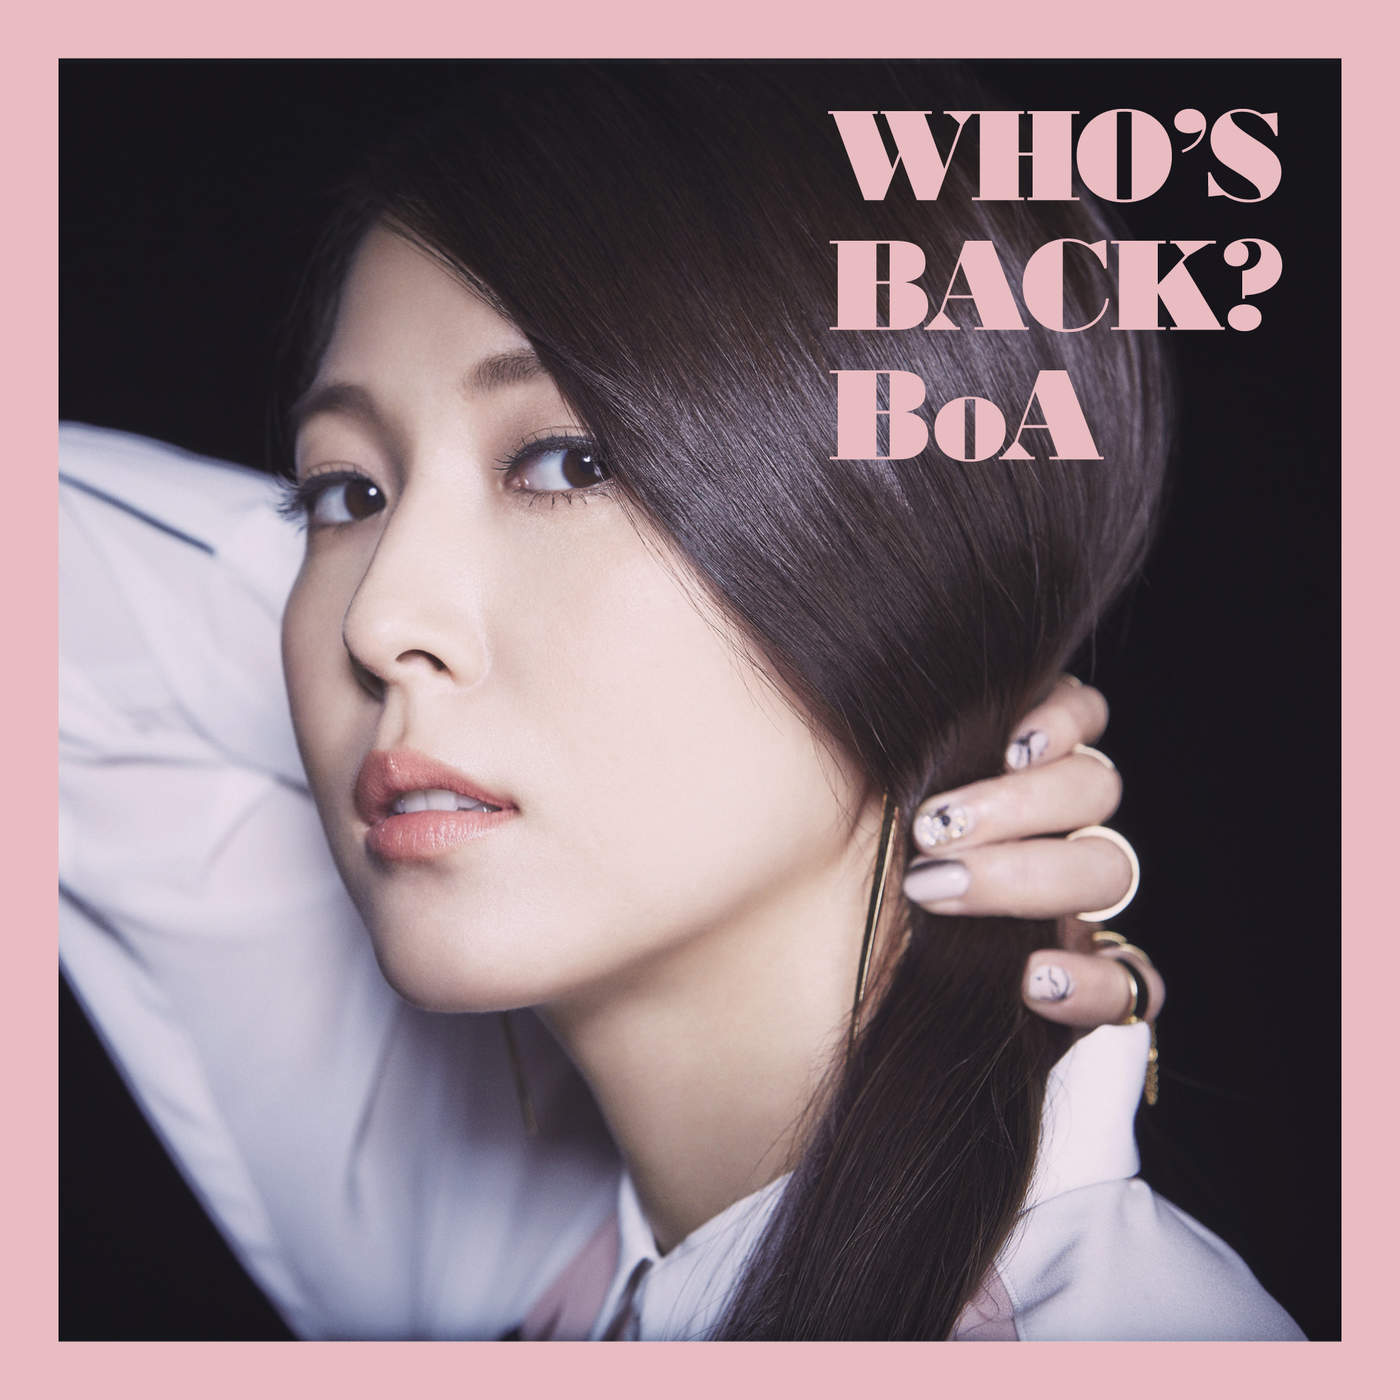 BoA – WHO’S BACK? (Japanese)